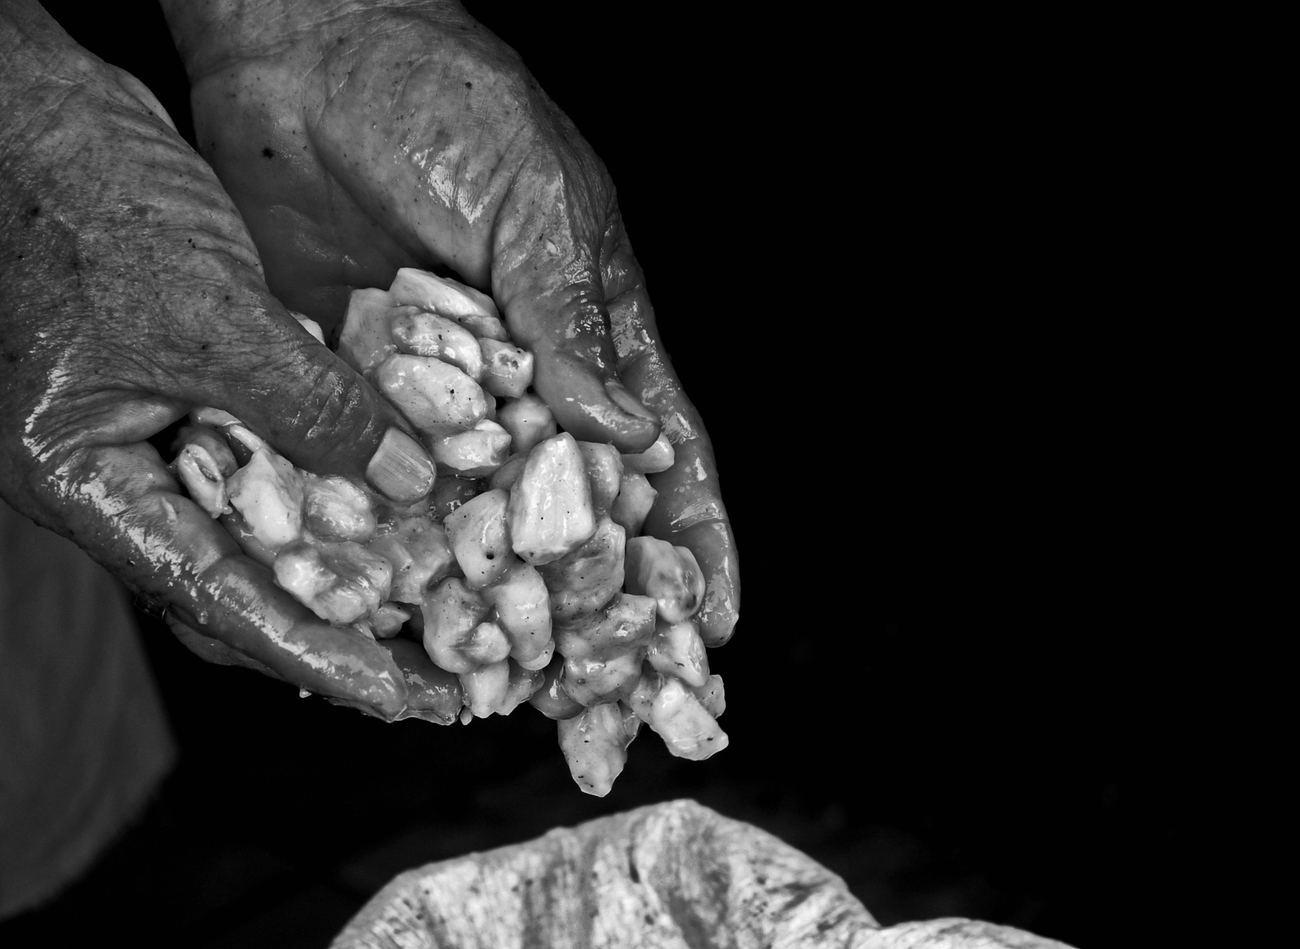 Equacacao - Mains déposant des fèves fraiches de cacao